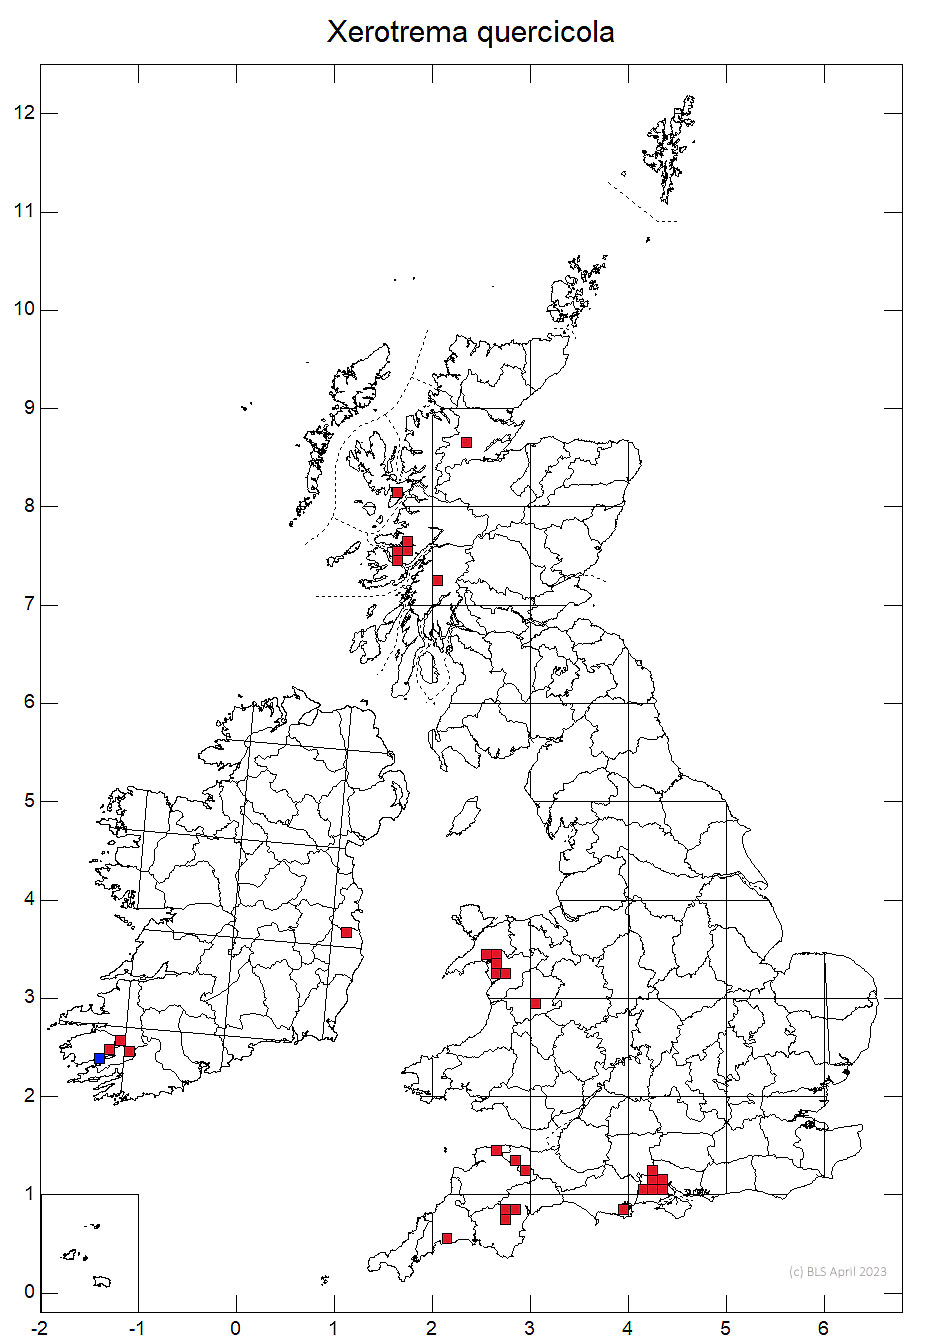 Xerotrema quercicola 10km sq distribution map